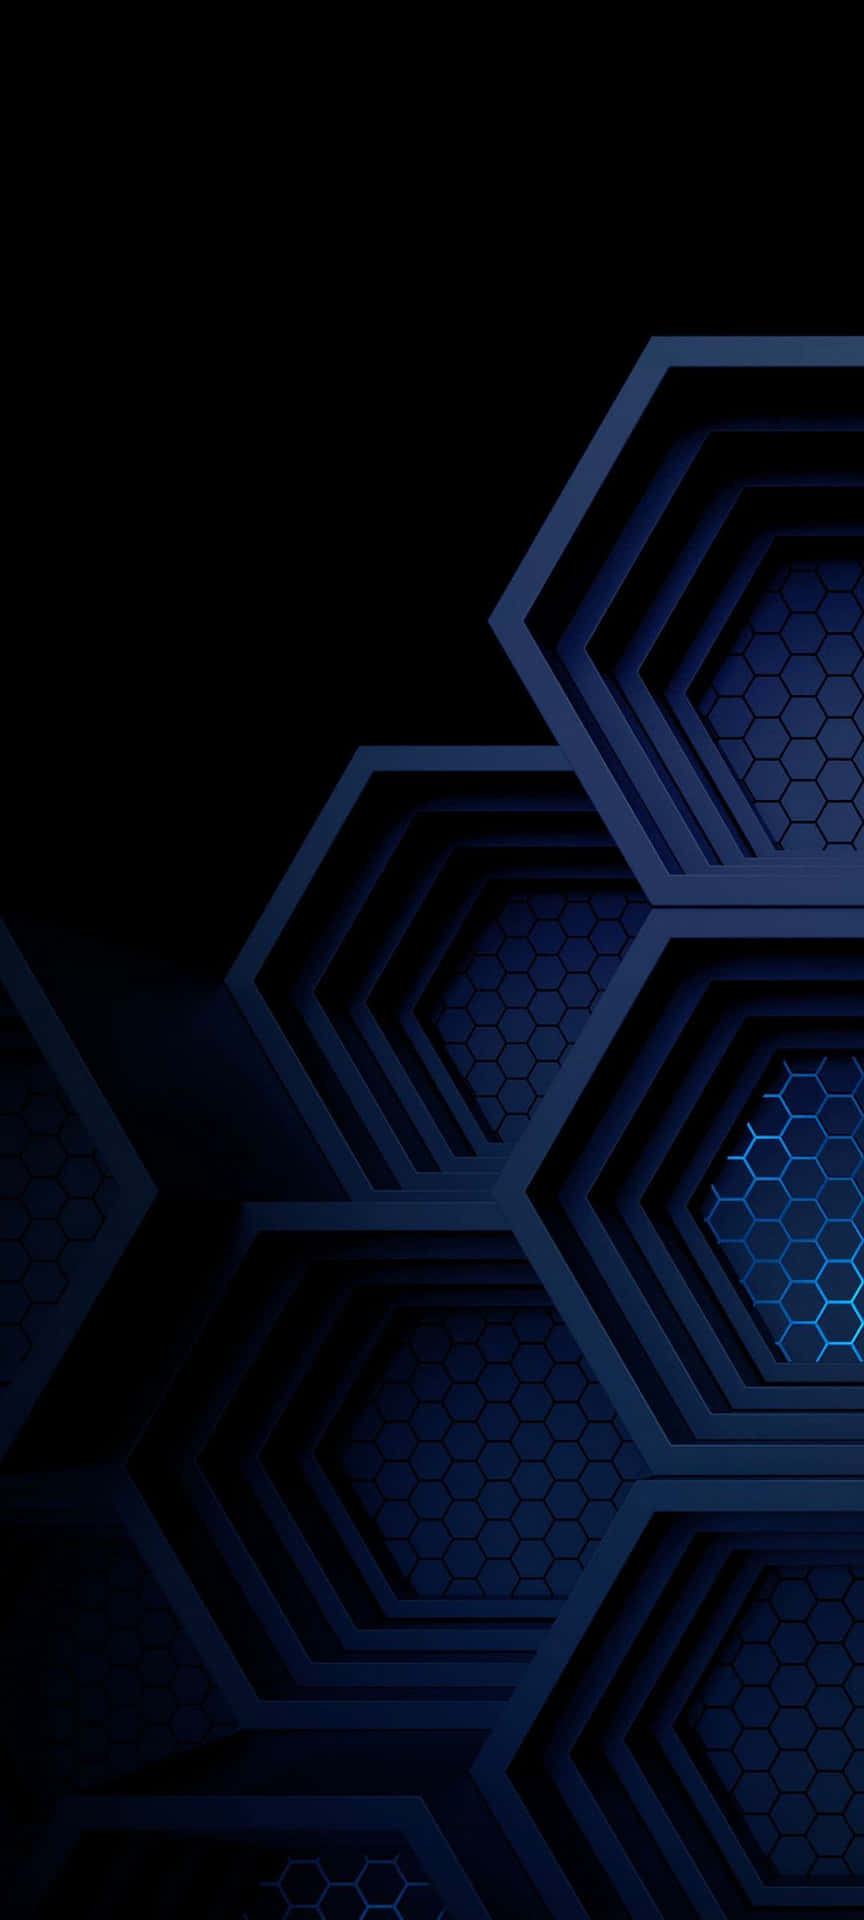 Blaueamoled-hexagone Wallpaper